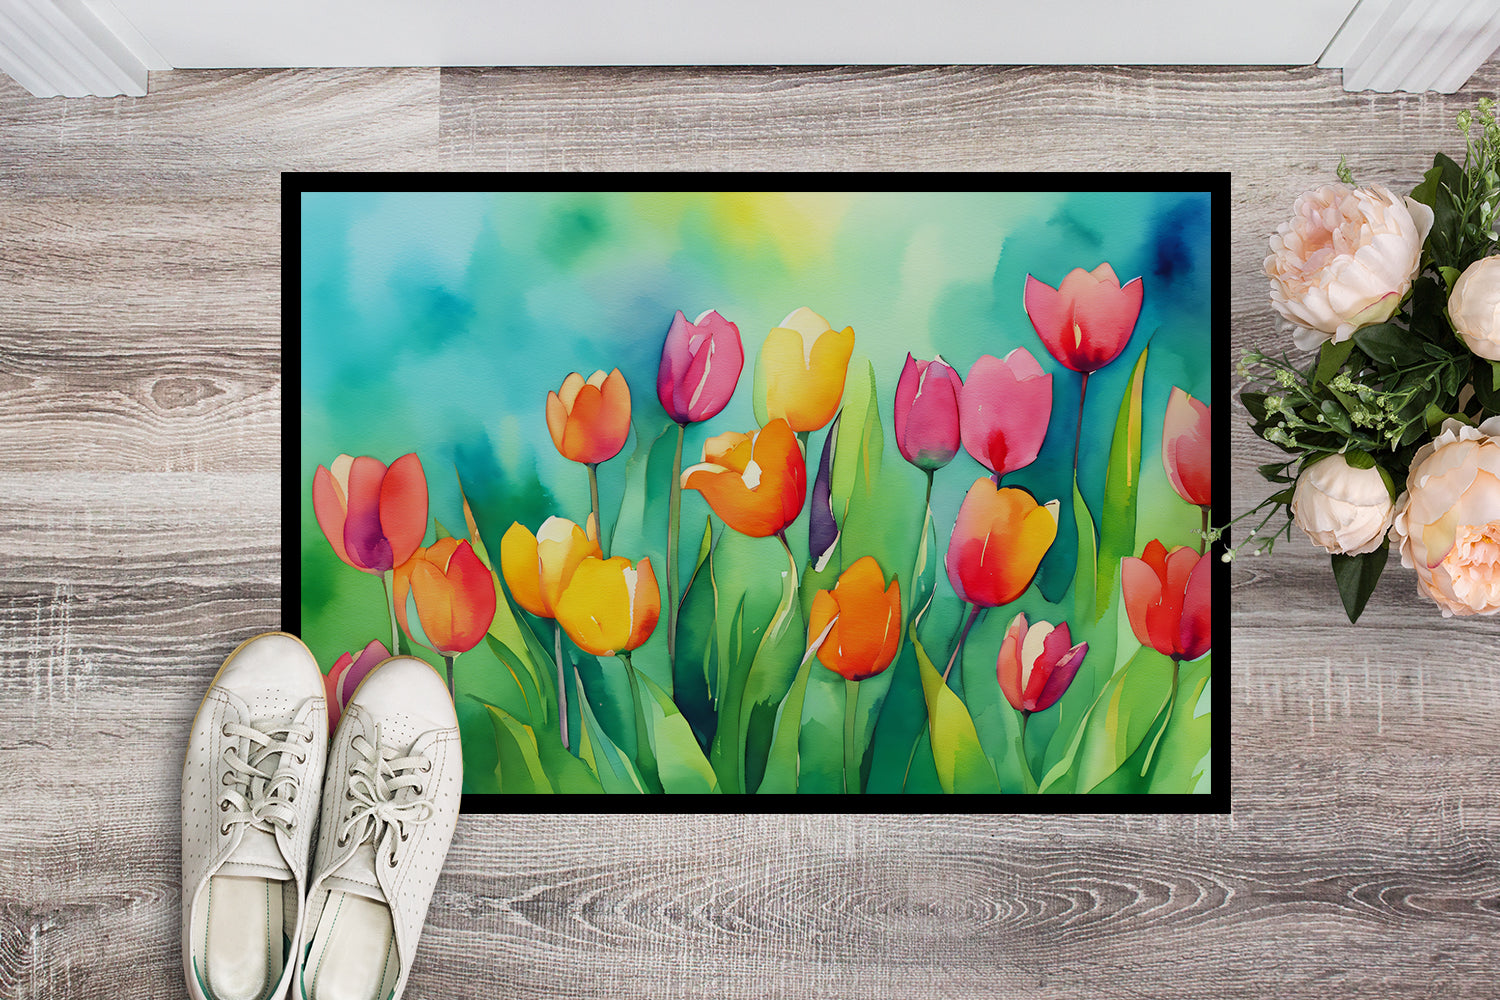 Buy this Tulips in Watercolor Indoor or Outdoor Mat 24x36